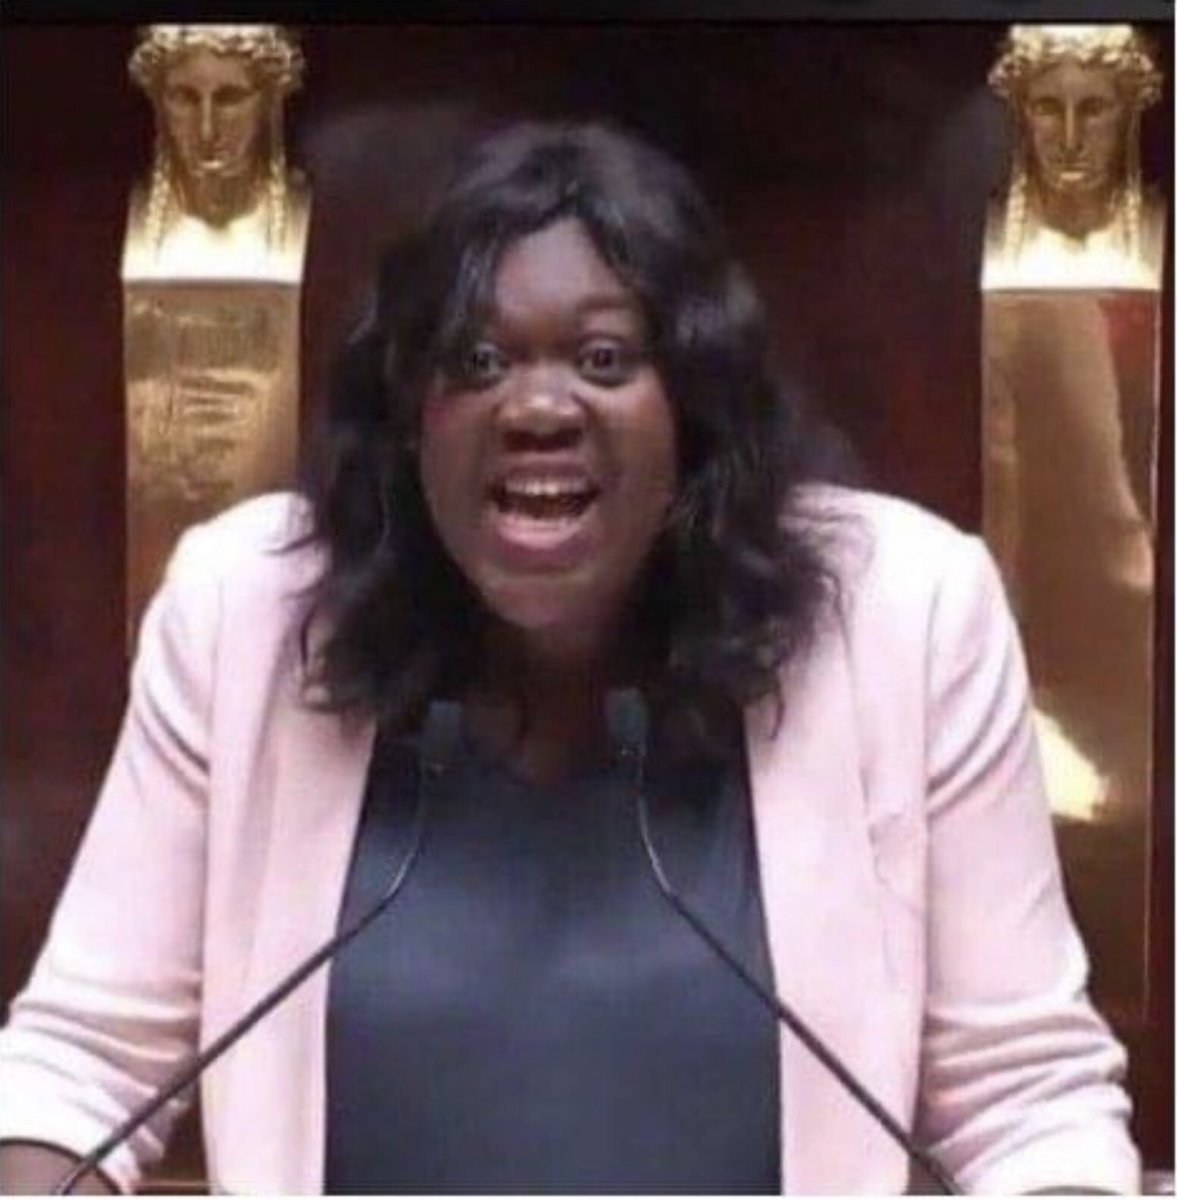 Cette fois ci Laetitia Avia a mordu la poussière dans la 8e circonscription de Paris.
#legislative2022